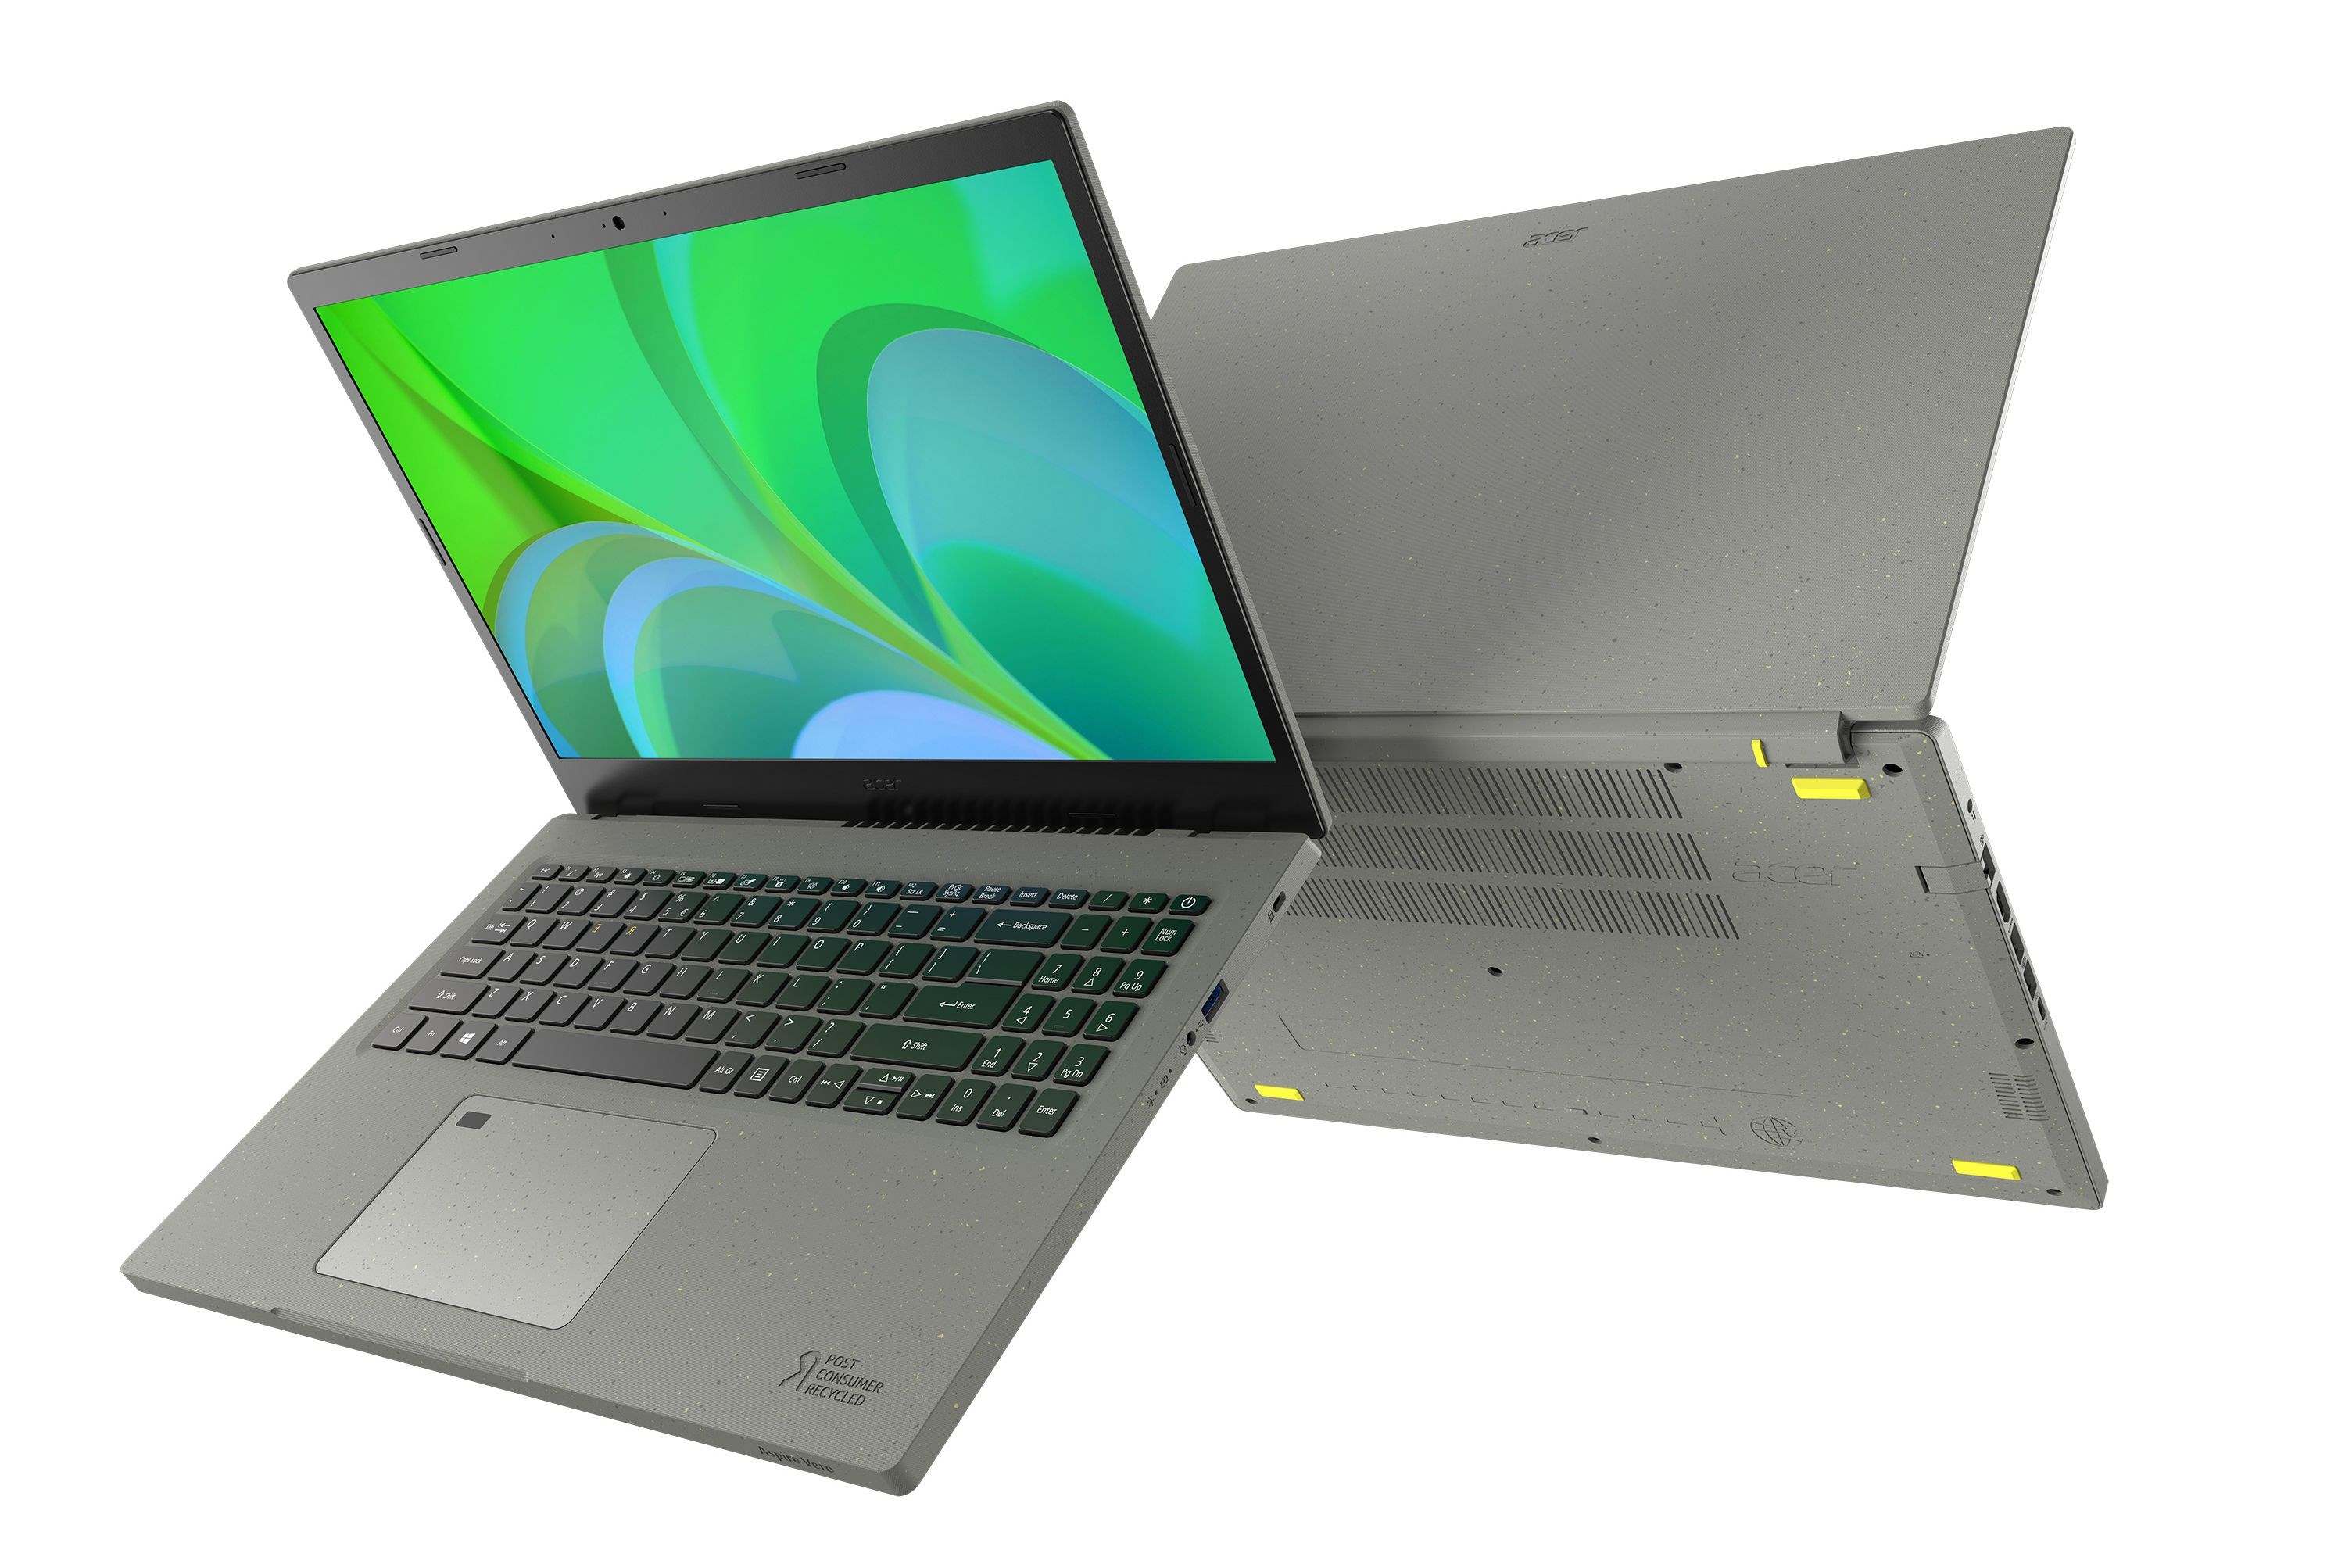 Geri dönüştürülmüş plastikten üretilen Acer Aspire Vero dizüstü bilgisayar tanıtıldı